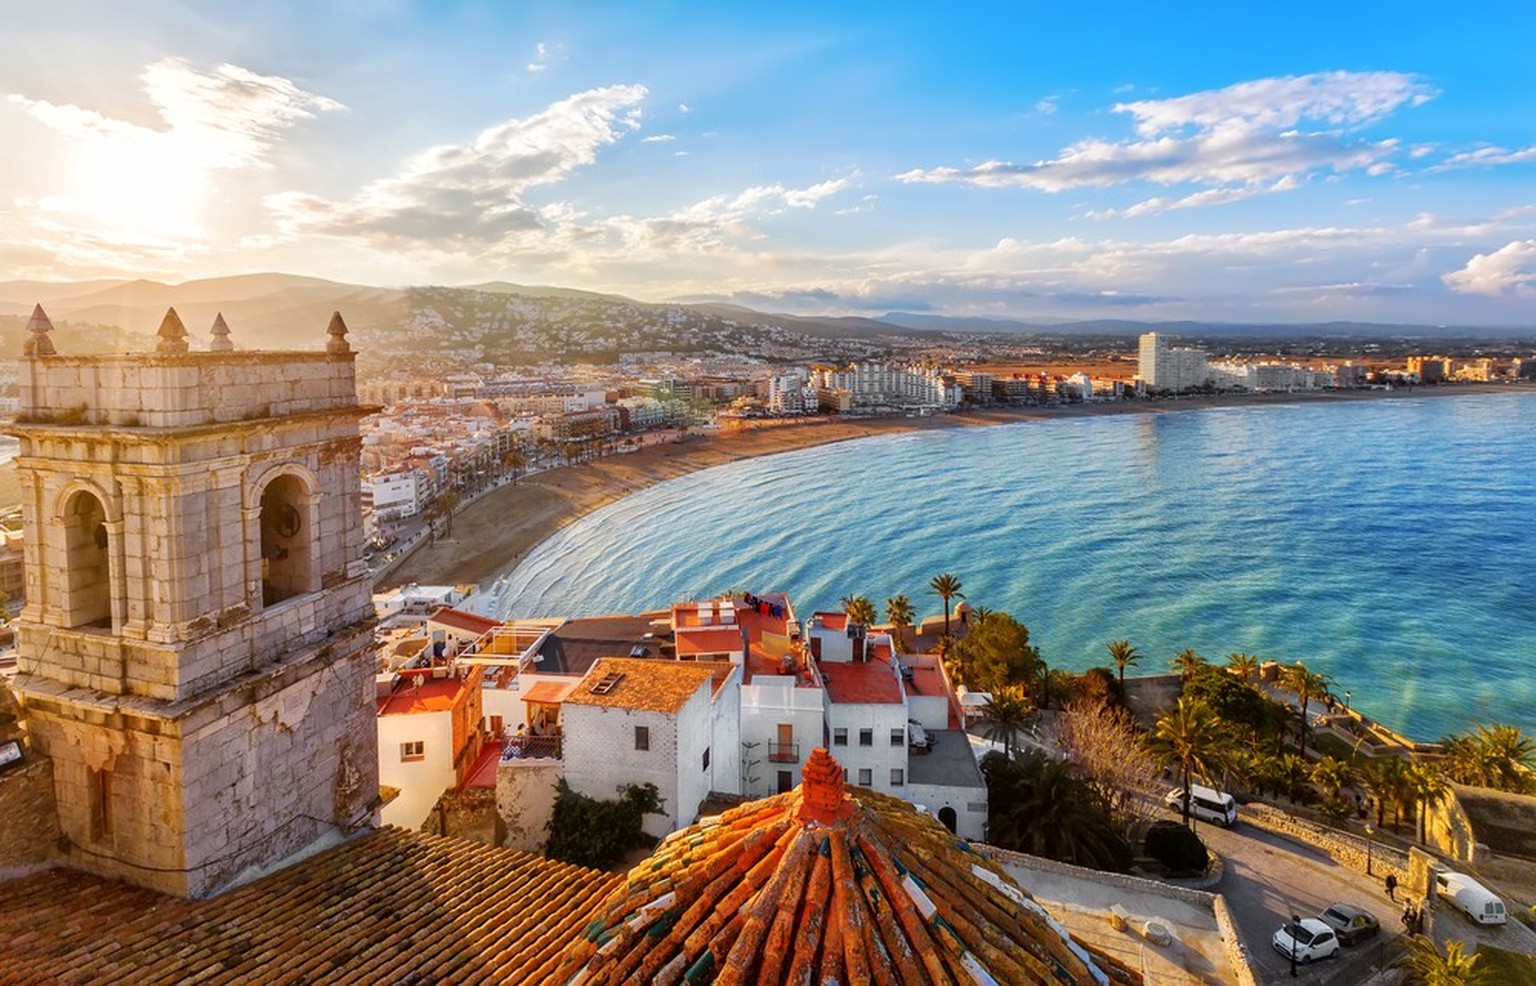 Les 50 plus beaux endroits du monde selon le Time: Valence, Espagne